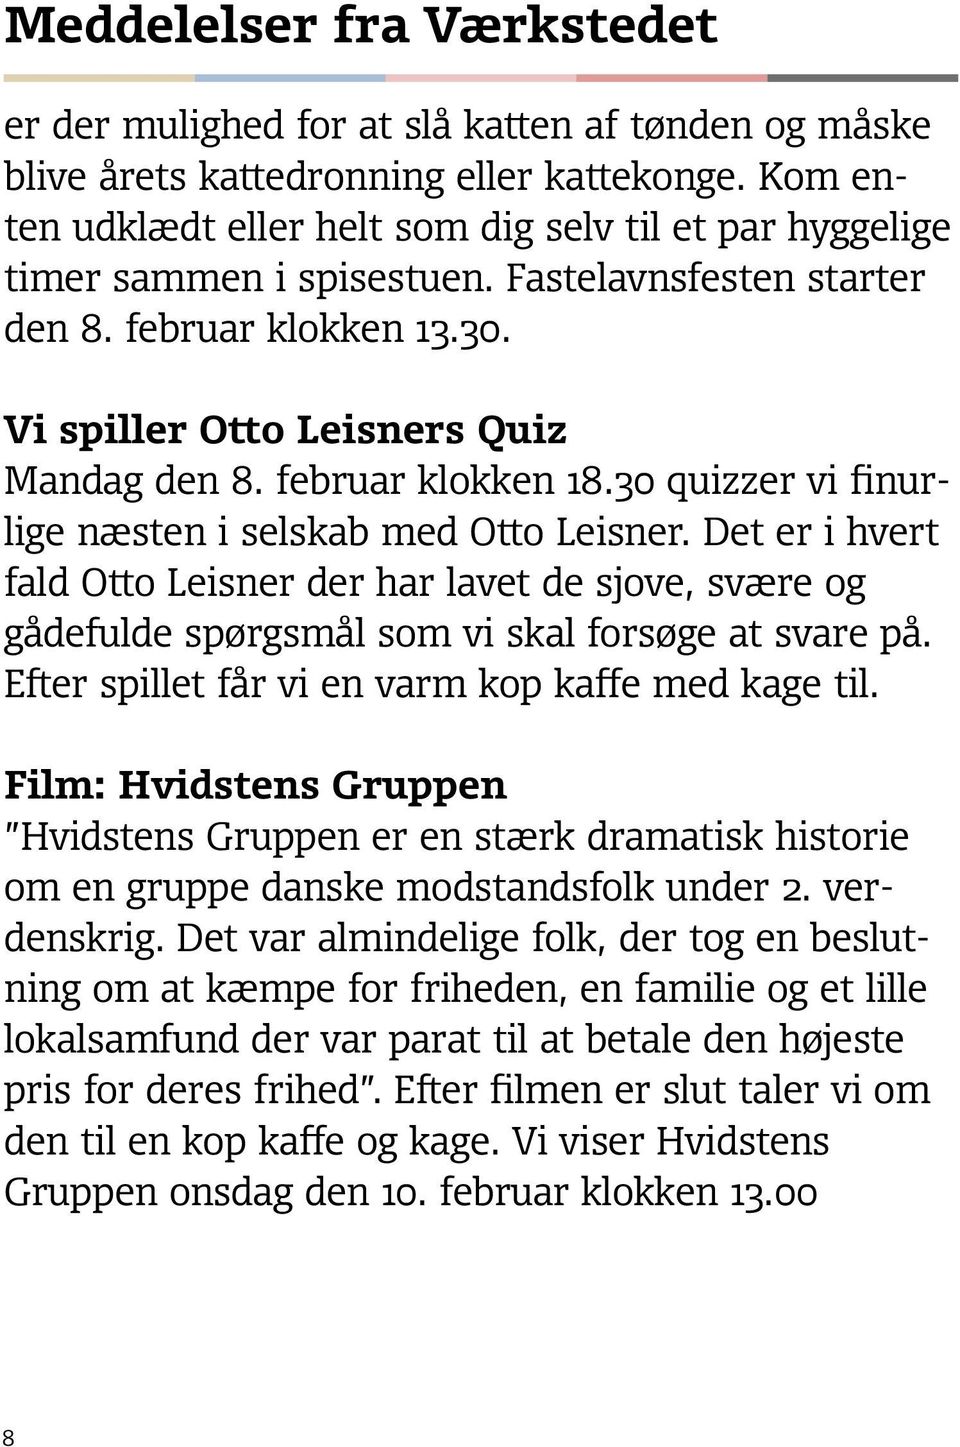 februar klokken 18.30 quizzer vi finurlige næsten i selskab med Otto Leisner. Det er i hvert fald Otto Leisner der har lavet de sjove, svære og gådefulde spørgsmål som vi skal forsøge at svare på.